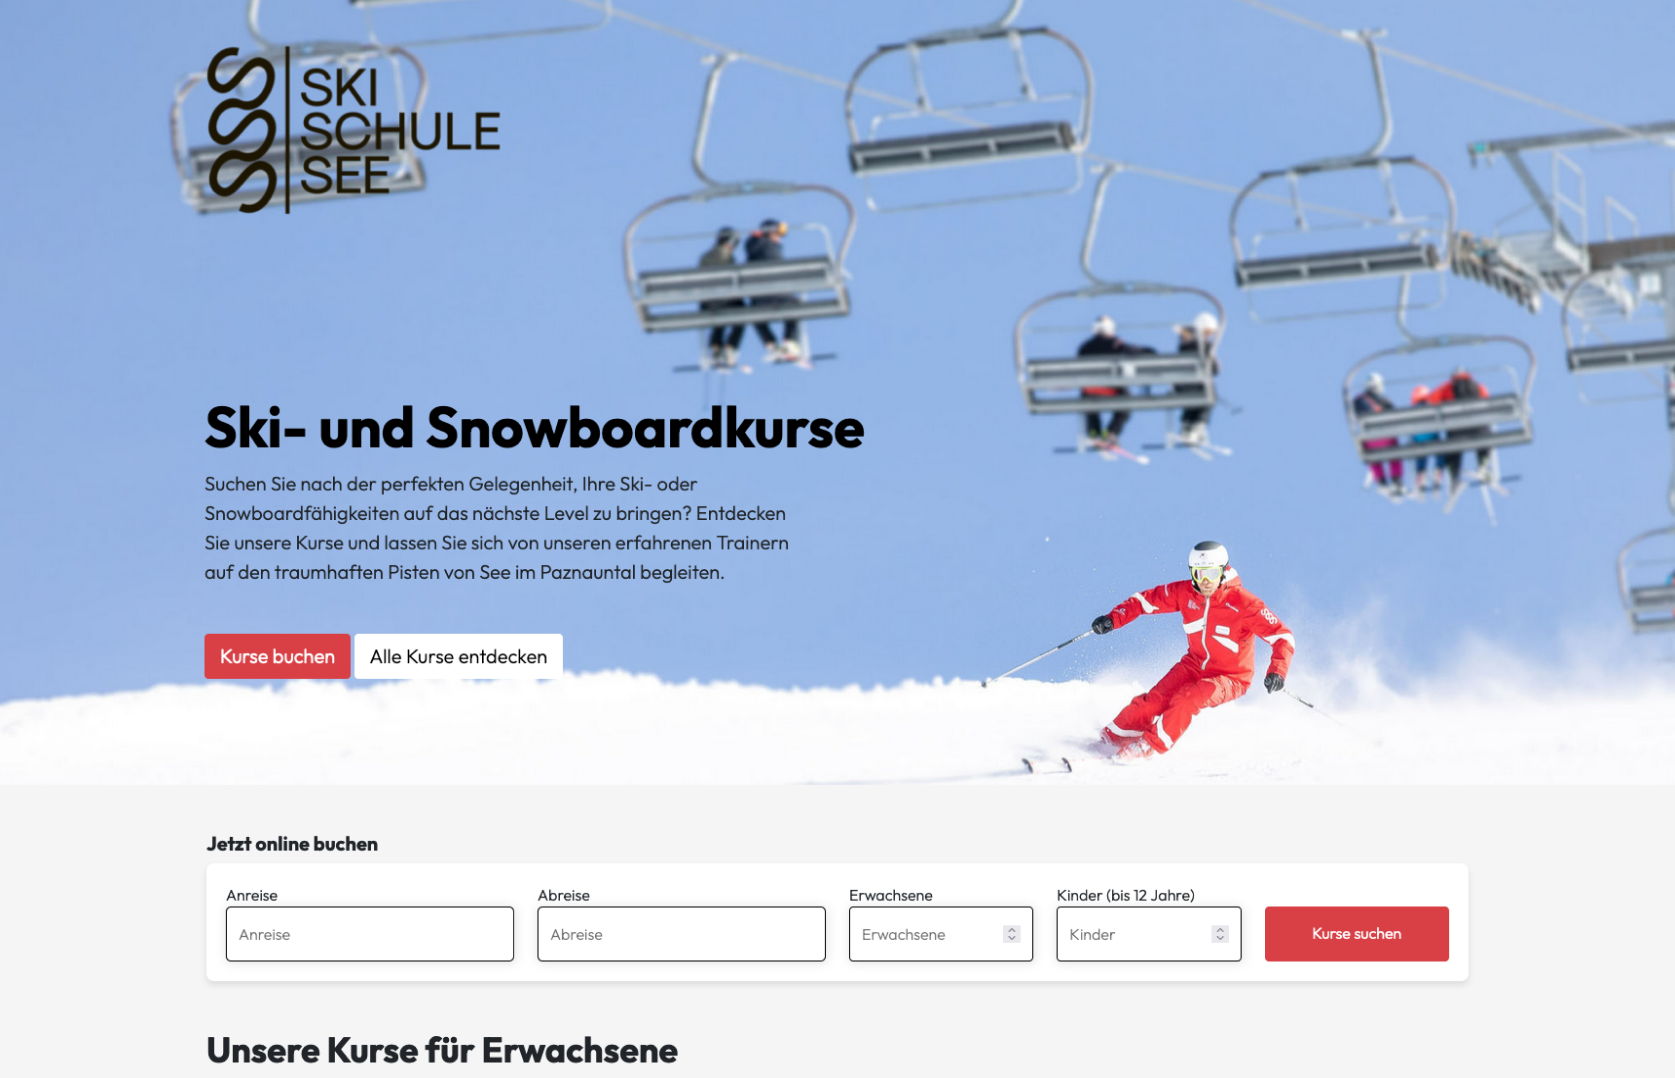 Skischule See